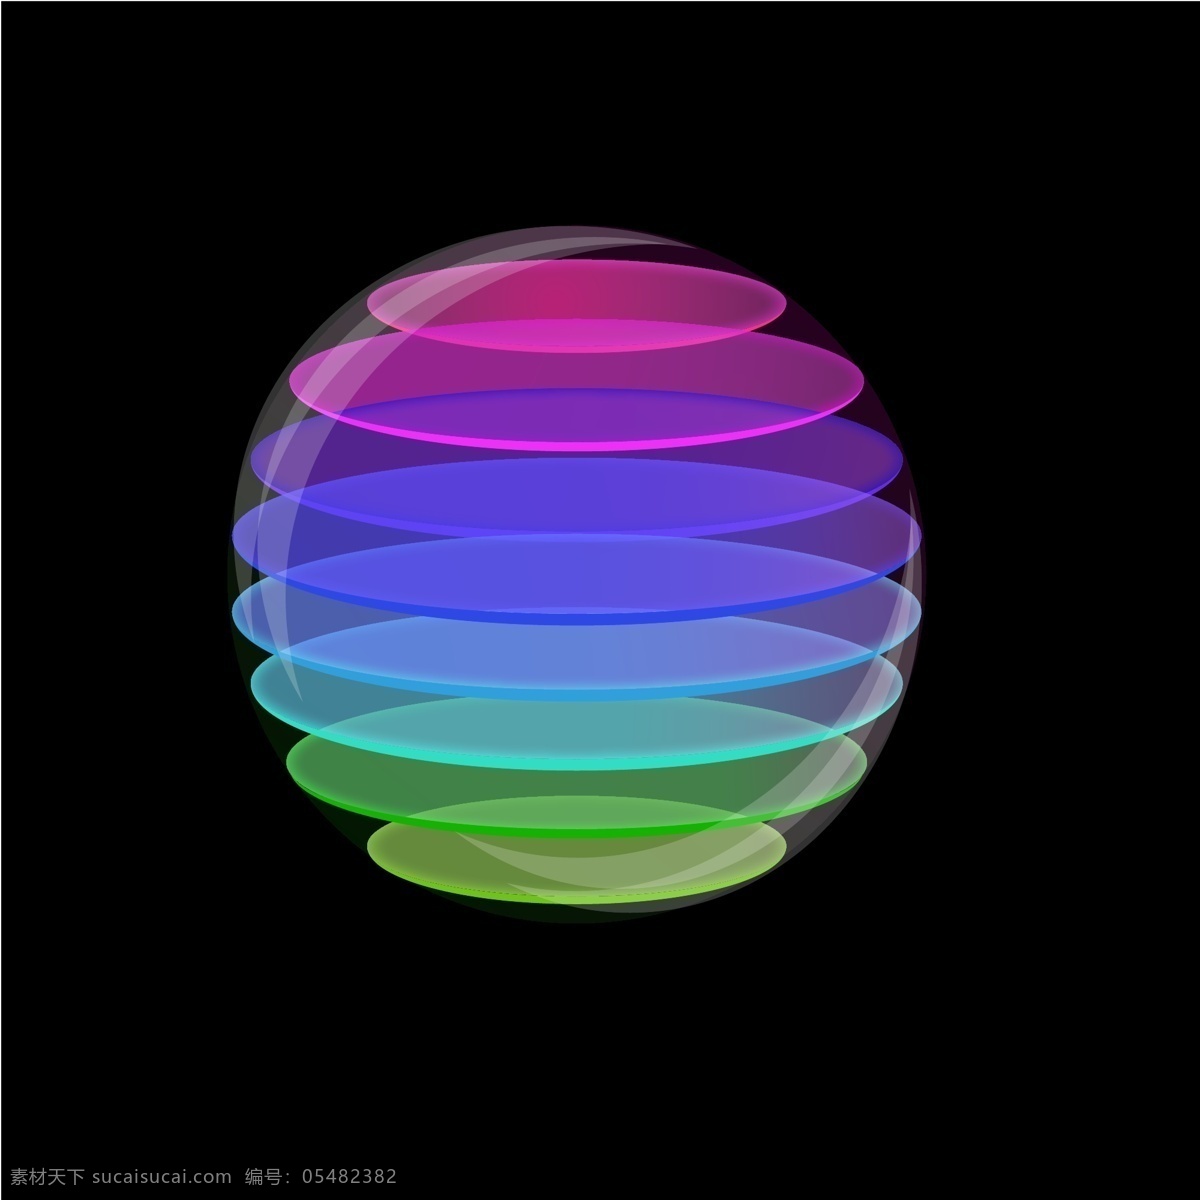 彩虹 球 七彩 圆形 球体 多层 3d 五颜六色 椭圆 分层 渐变色 彩虹球 七彩球 3d球 紫色球 蓝色球 绿色球 立体球 半透明球 尺量图 渐变球